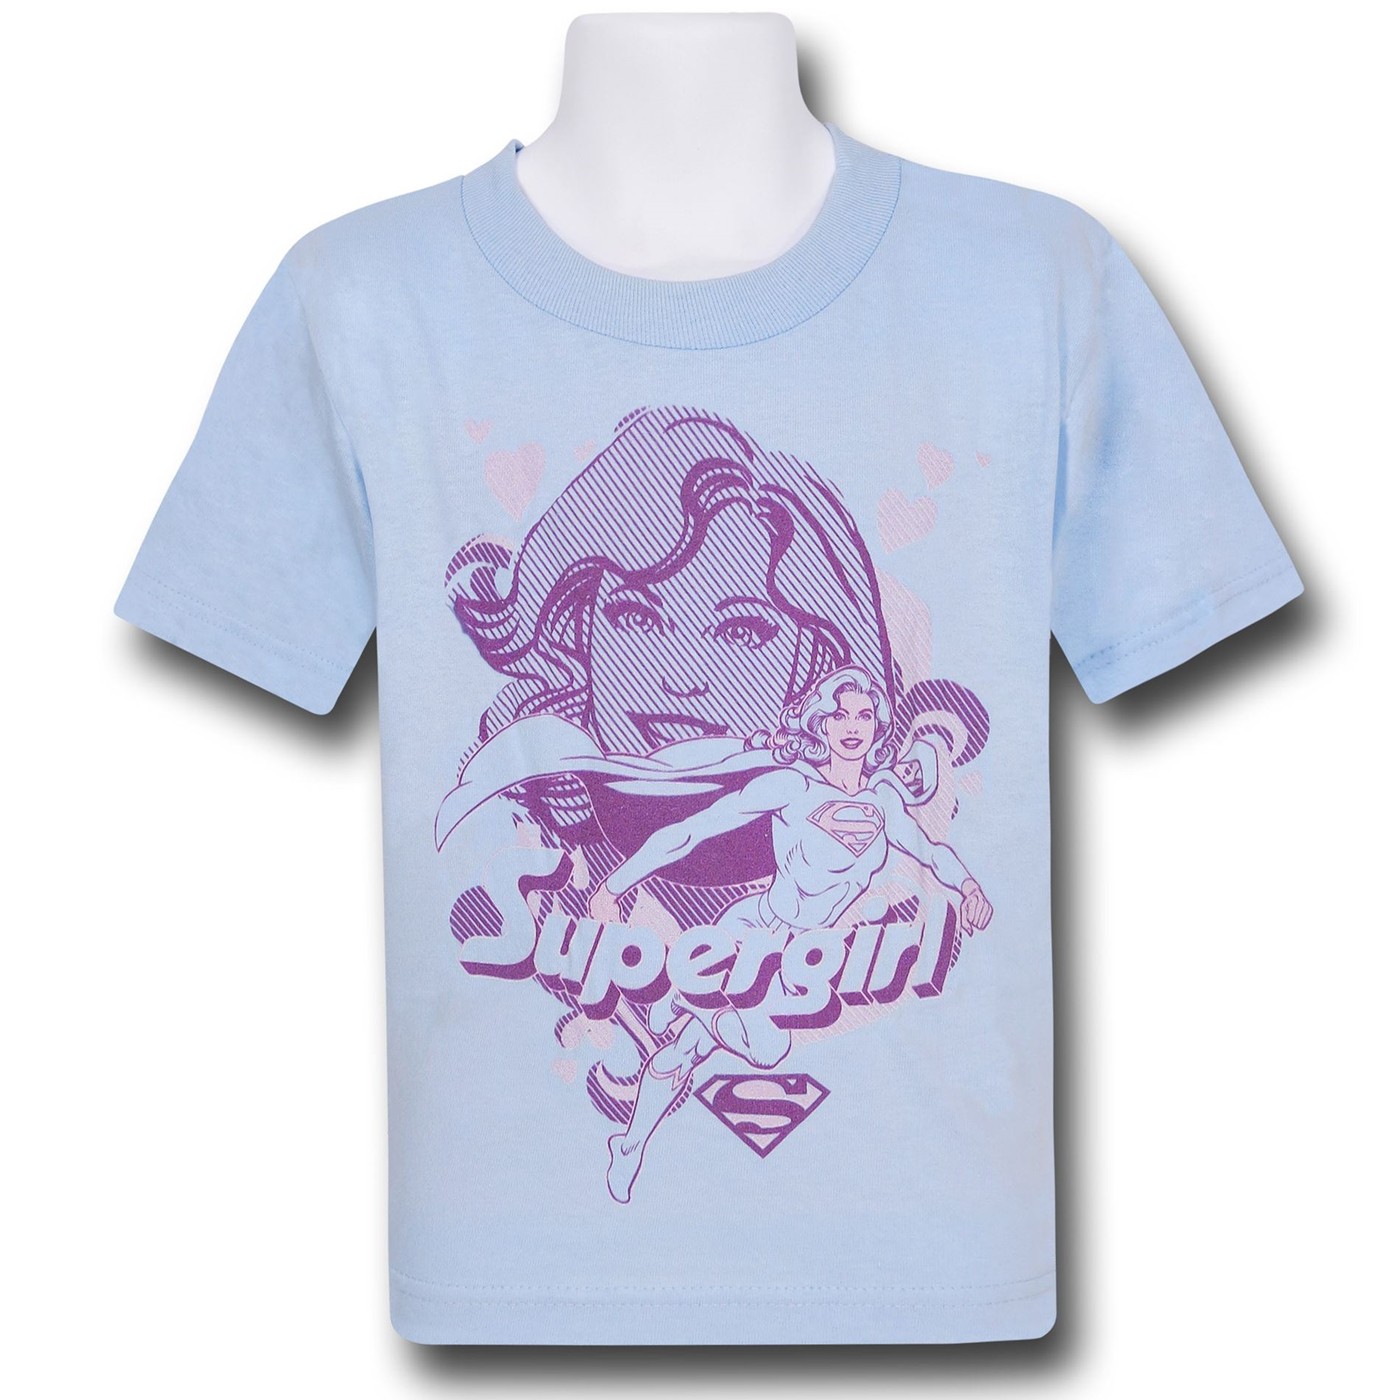 Supergirl Pink on Blue Kids T-Shirt